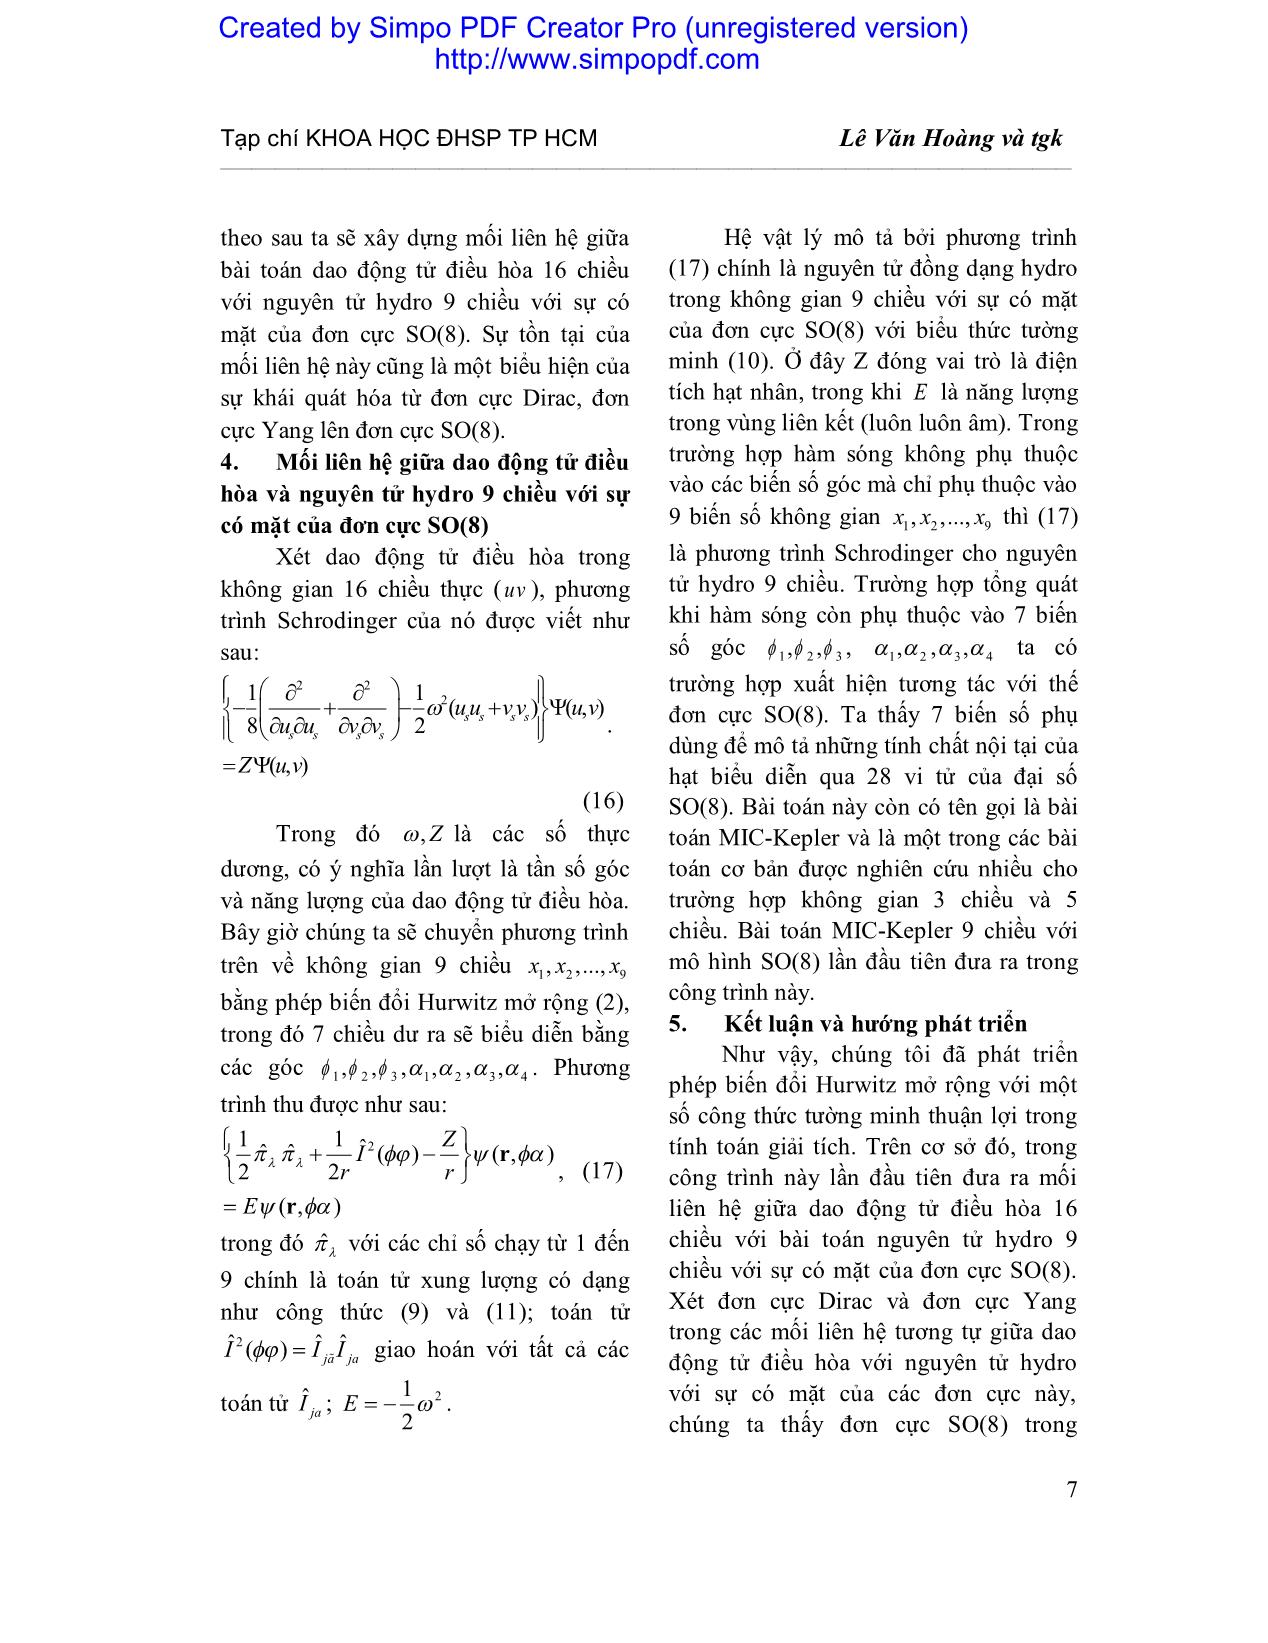 Mở rộng đơn cực Dirac và Yang cho không gian 9 chiều trang 5